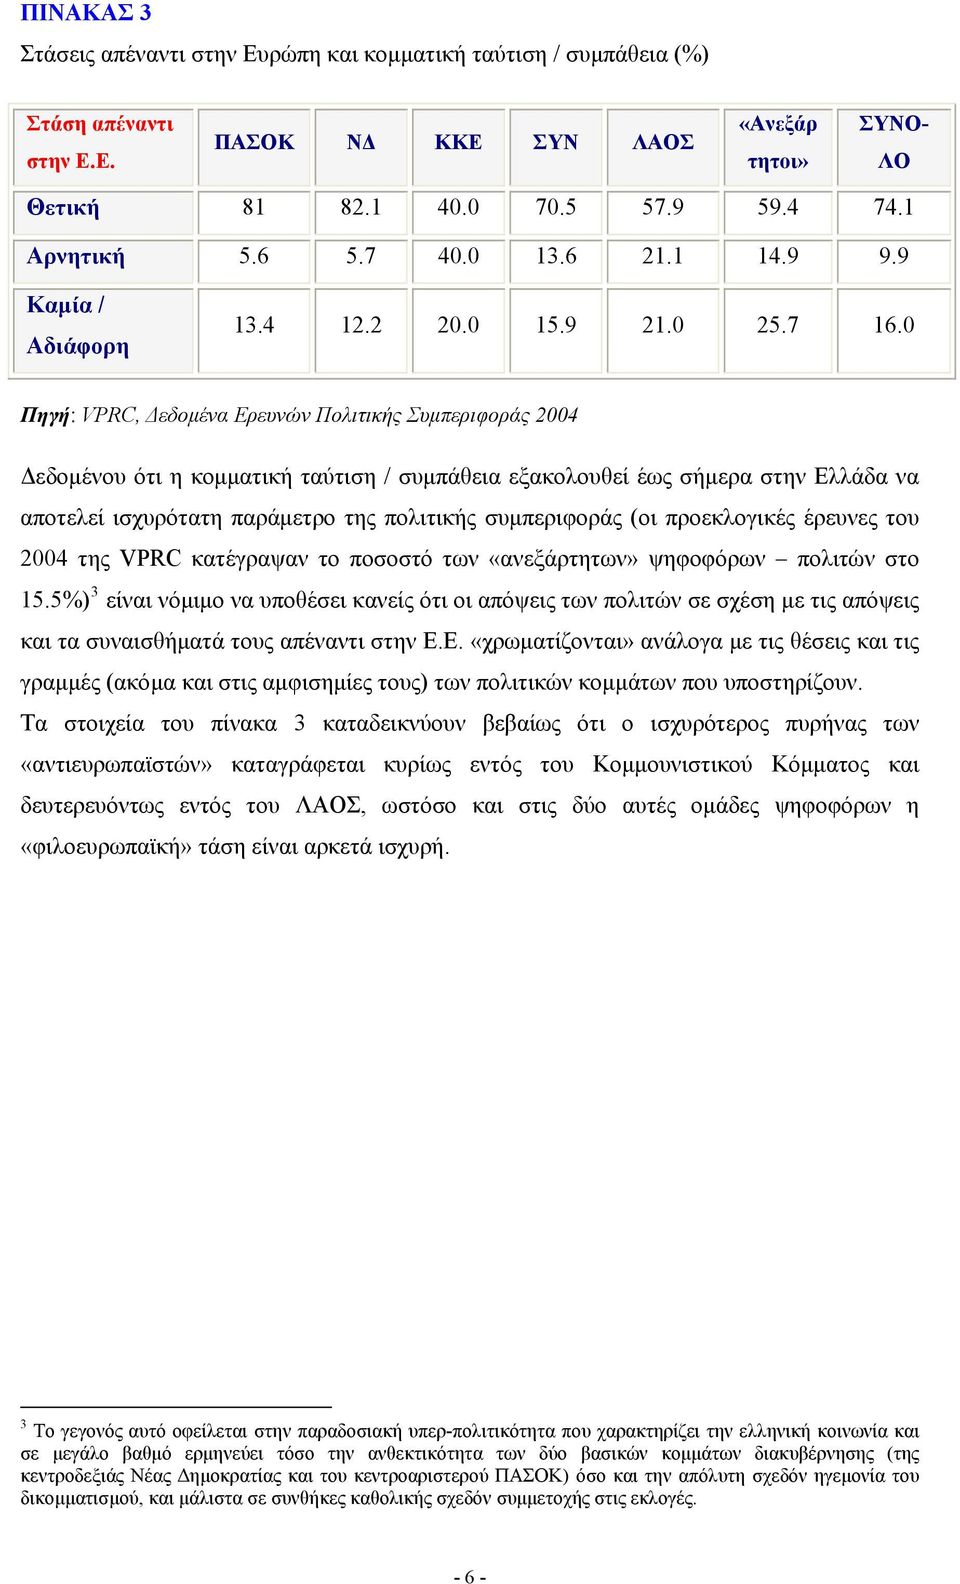 0 Πηγή: VPRC, Δεδομένα Ερευνών Πολιτικής Συμπεριφοράς 2004 Δεδομένου ότι η κομματική ταύτιση / συμπάθεια εξακολουθεί έως σήμερα στην Ελλάδα να αποτελεί ισχυρότατη παράμετρο της πολιτικής συμπεριφοράς